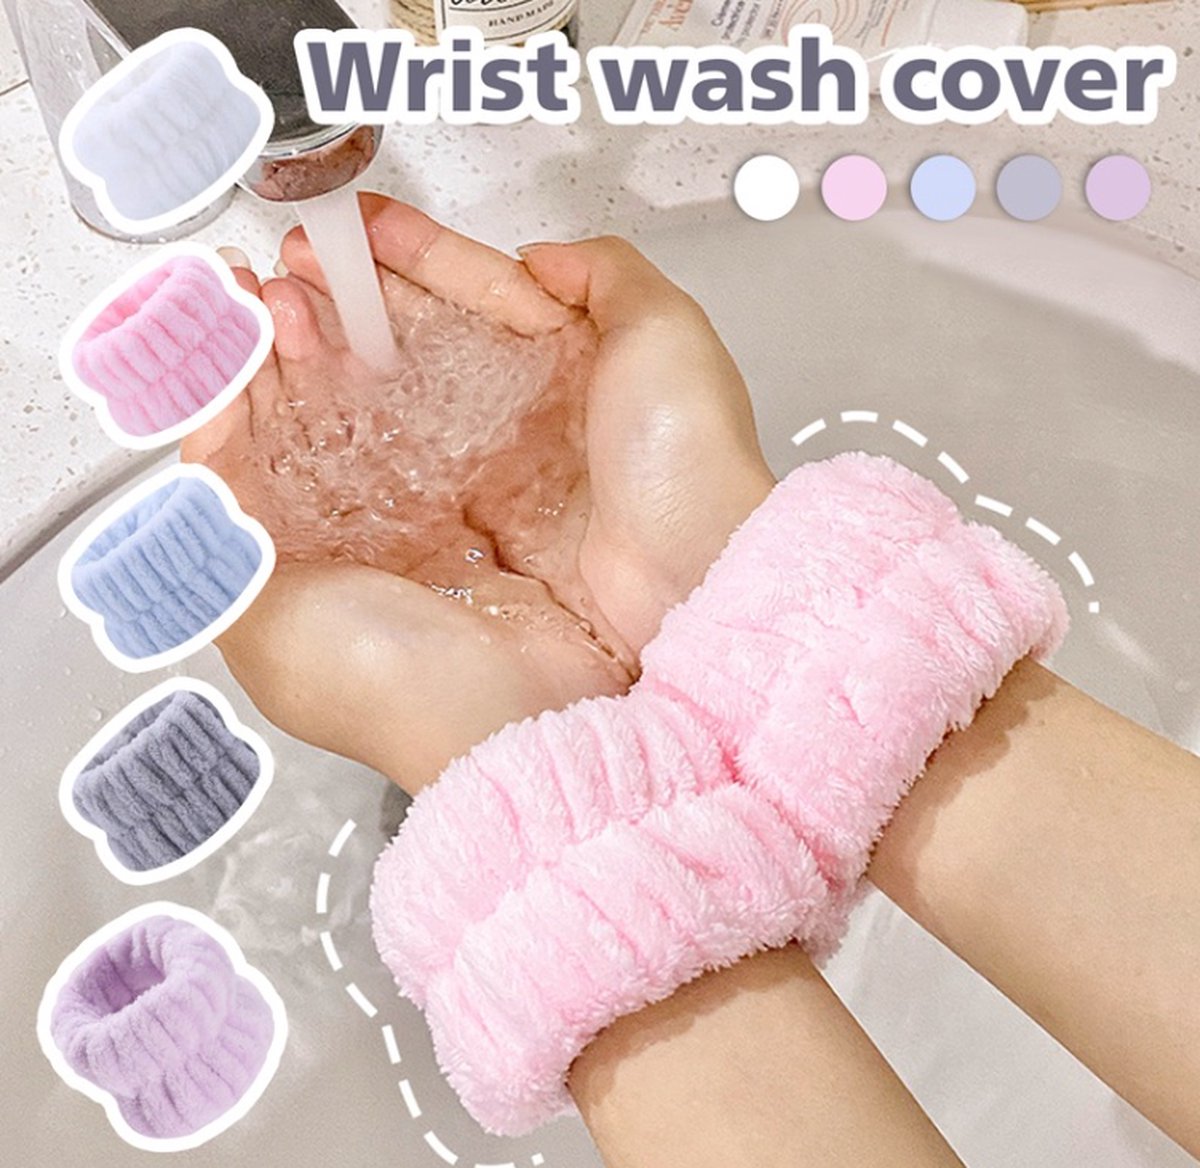 2 stuks ( 1 paar ) Roze Wrist Wash Cover - Gezicht Wassen - Handdoek Polsbandjes Voor Wassen Gezicht - Zacht - Microfiber